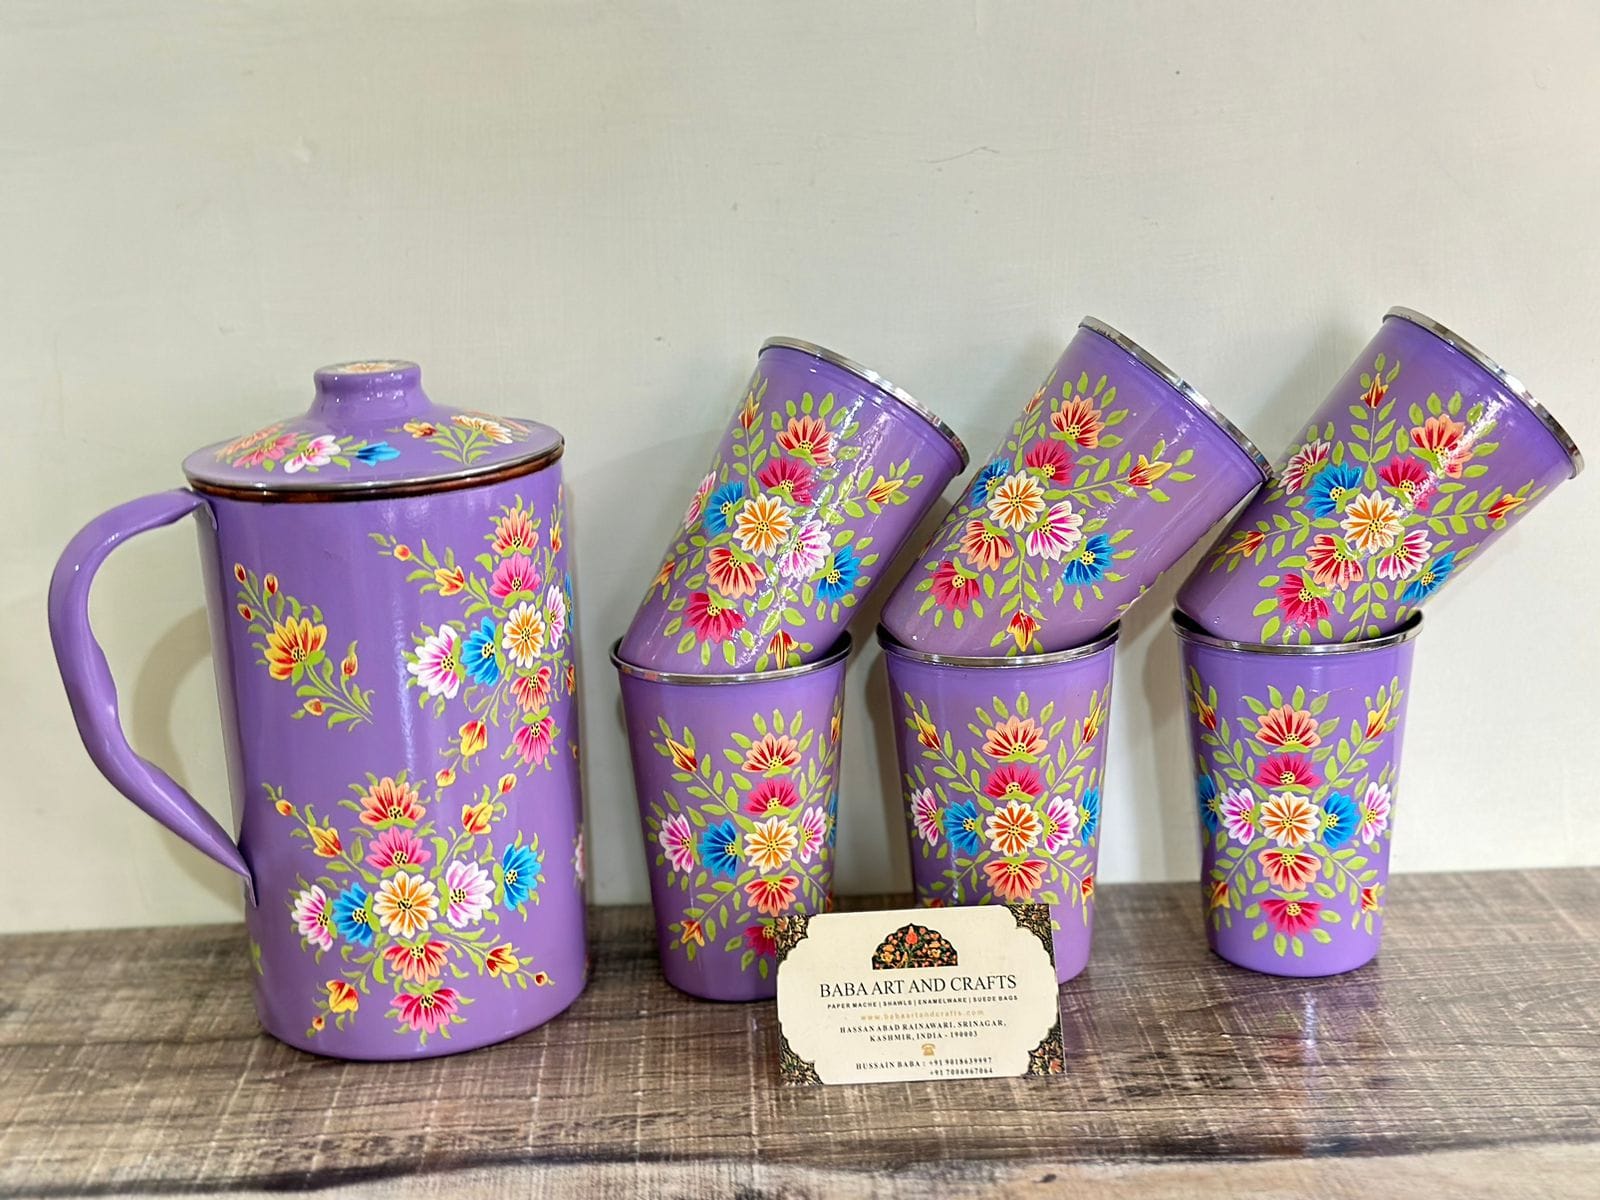 Hand painted jug set, Enamel Ware utensils,Enamelware jug set with 6 hand painted steel glass , kashmiri enamelware, hand painted tumbler and steel pitcher